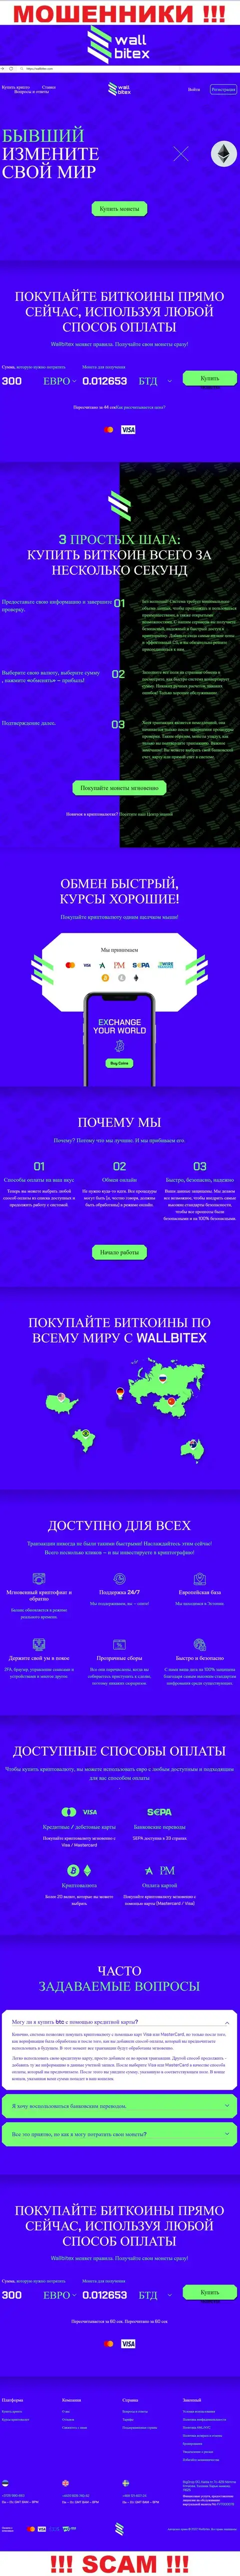 WallBitex Com это официальный web-портал жульнической организации Валл Битекс